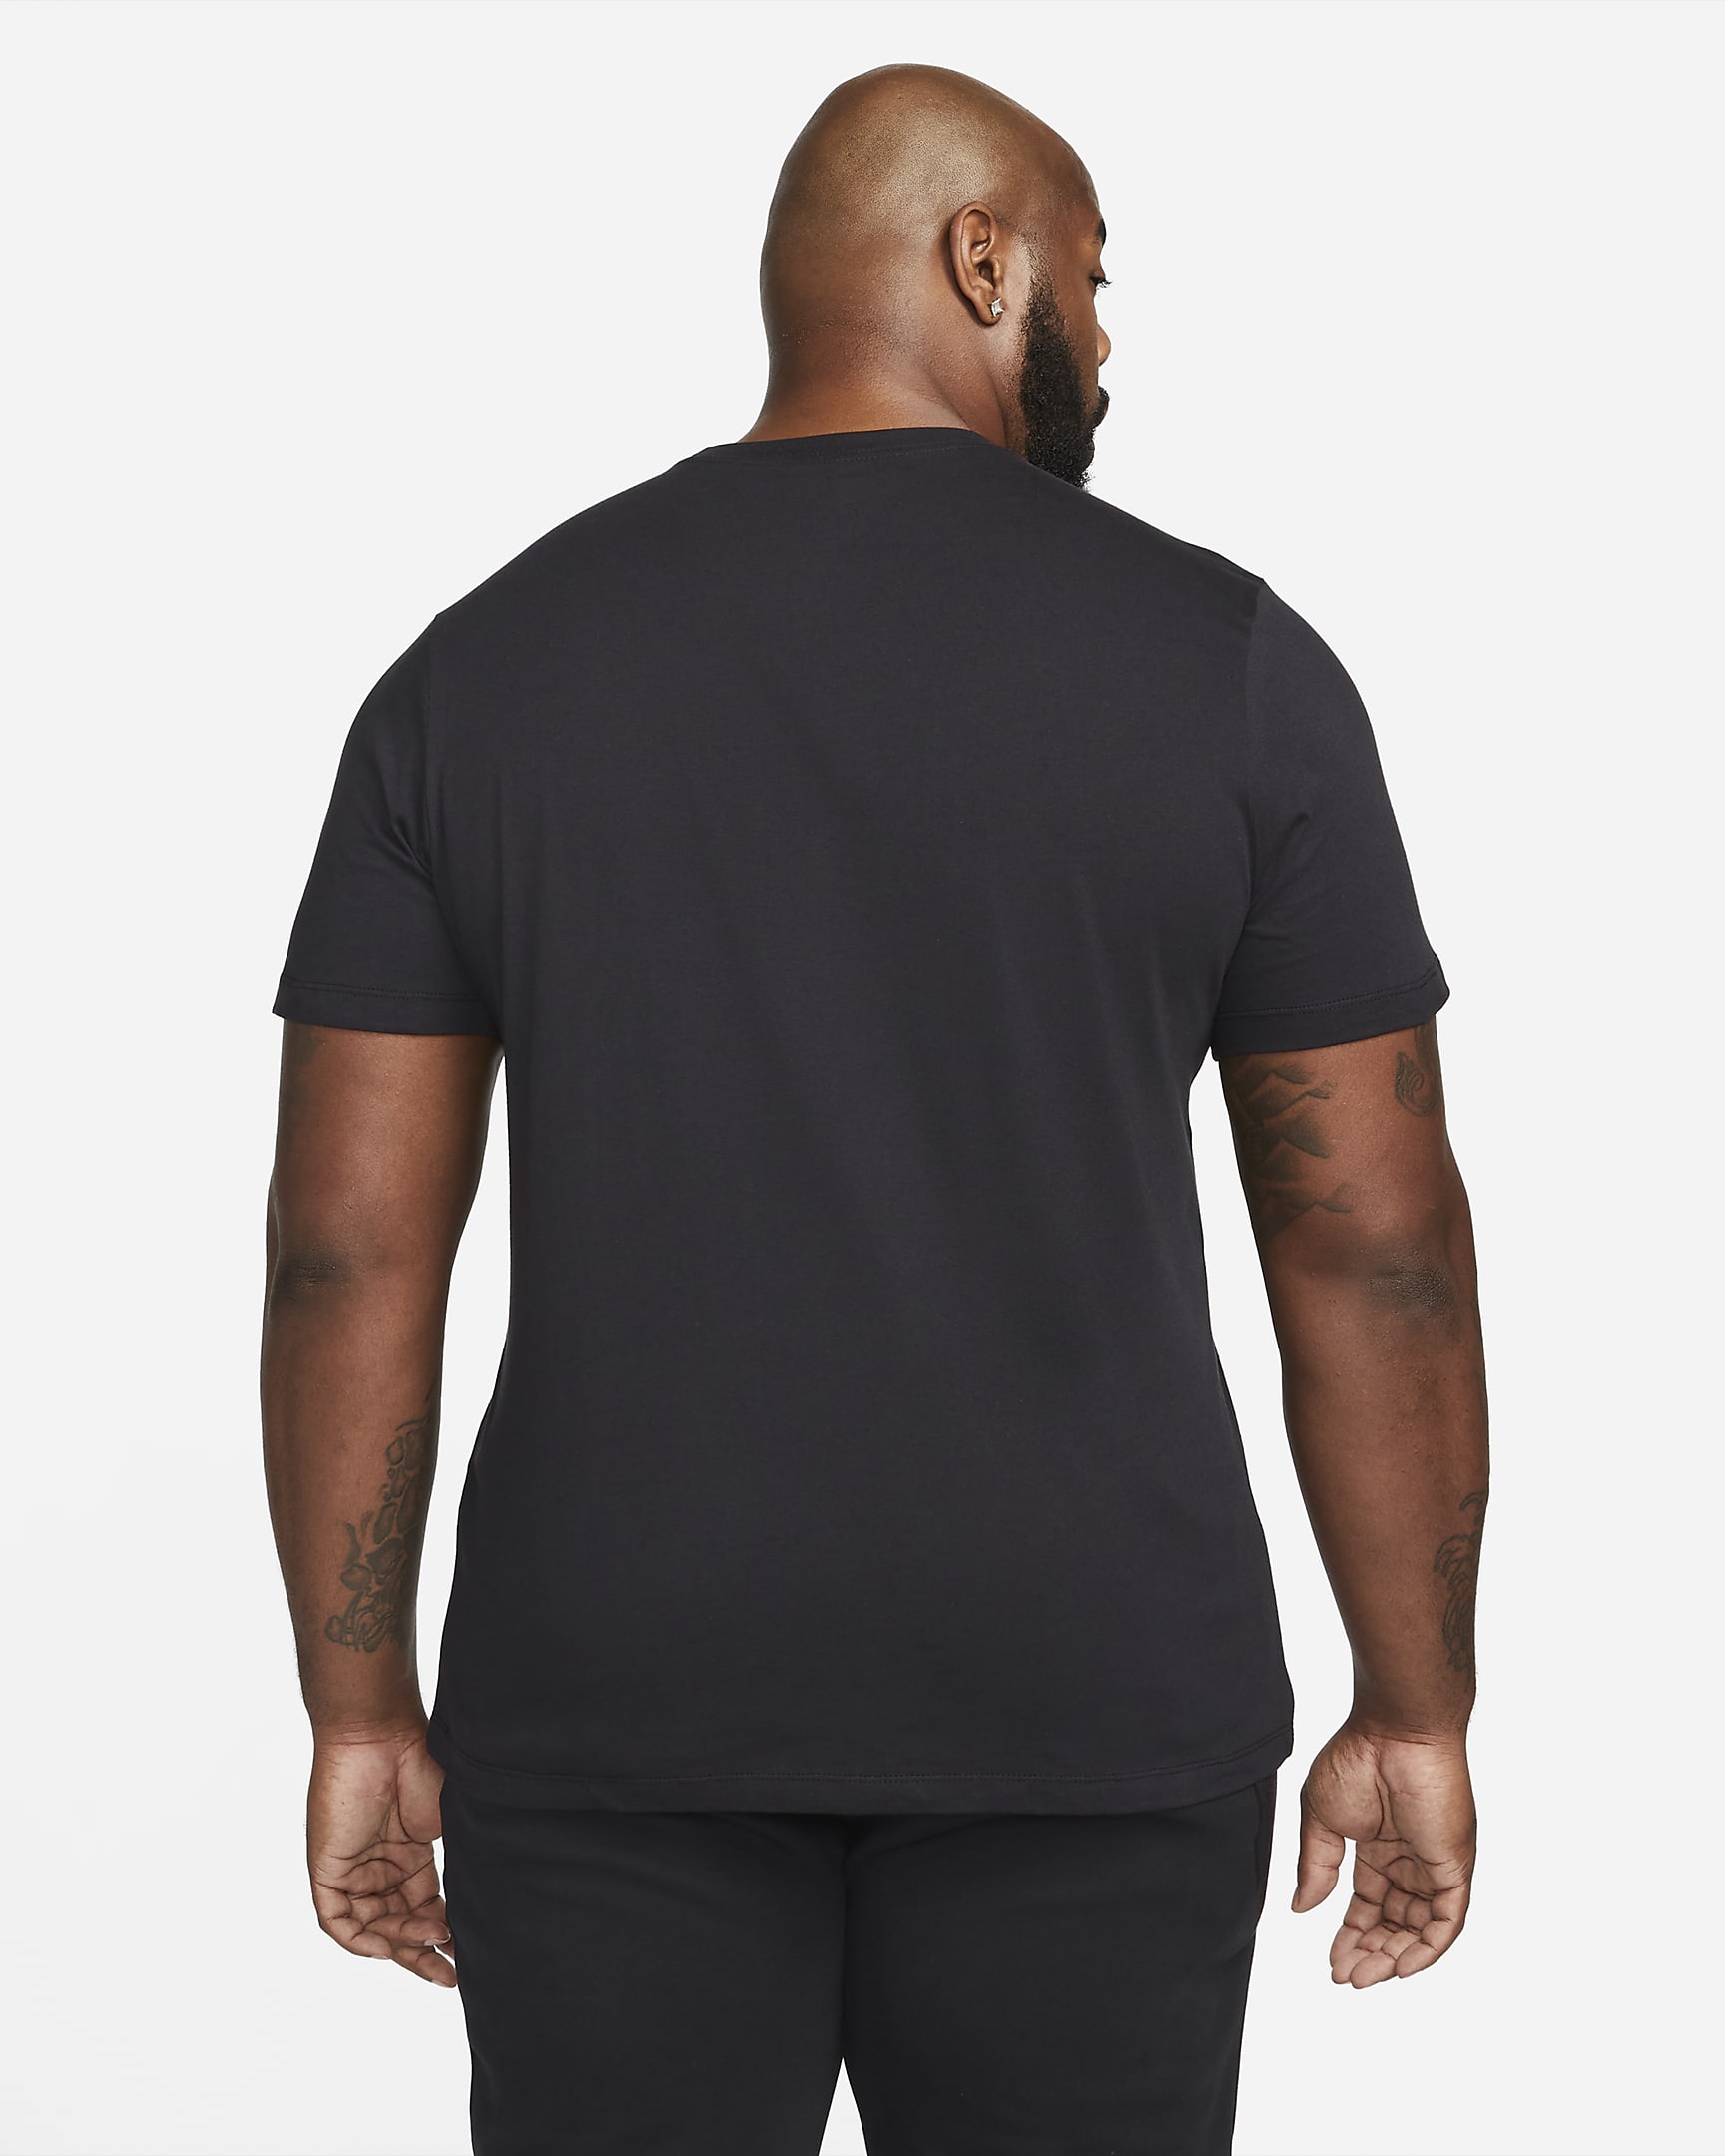 Nike Sportswear Men's Black Light T-Shirt. Nike.com